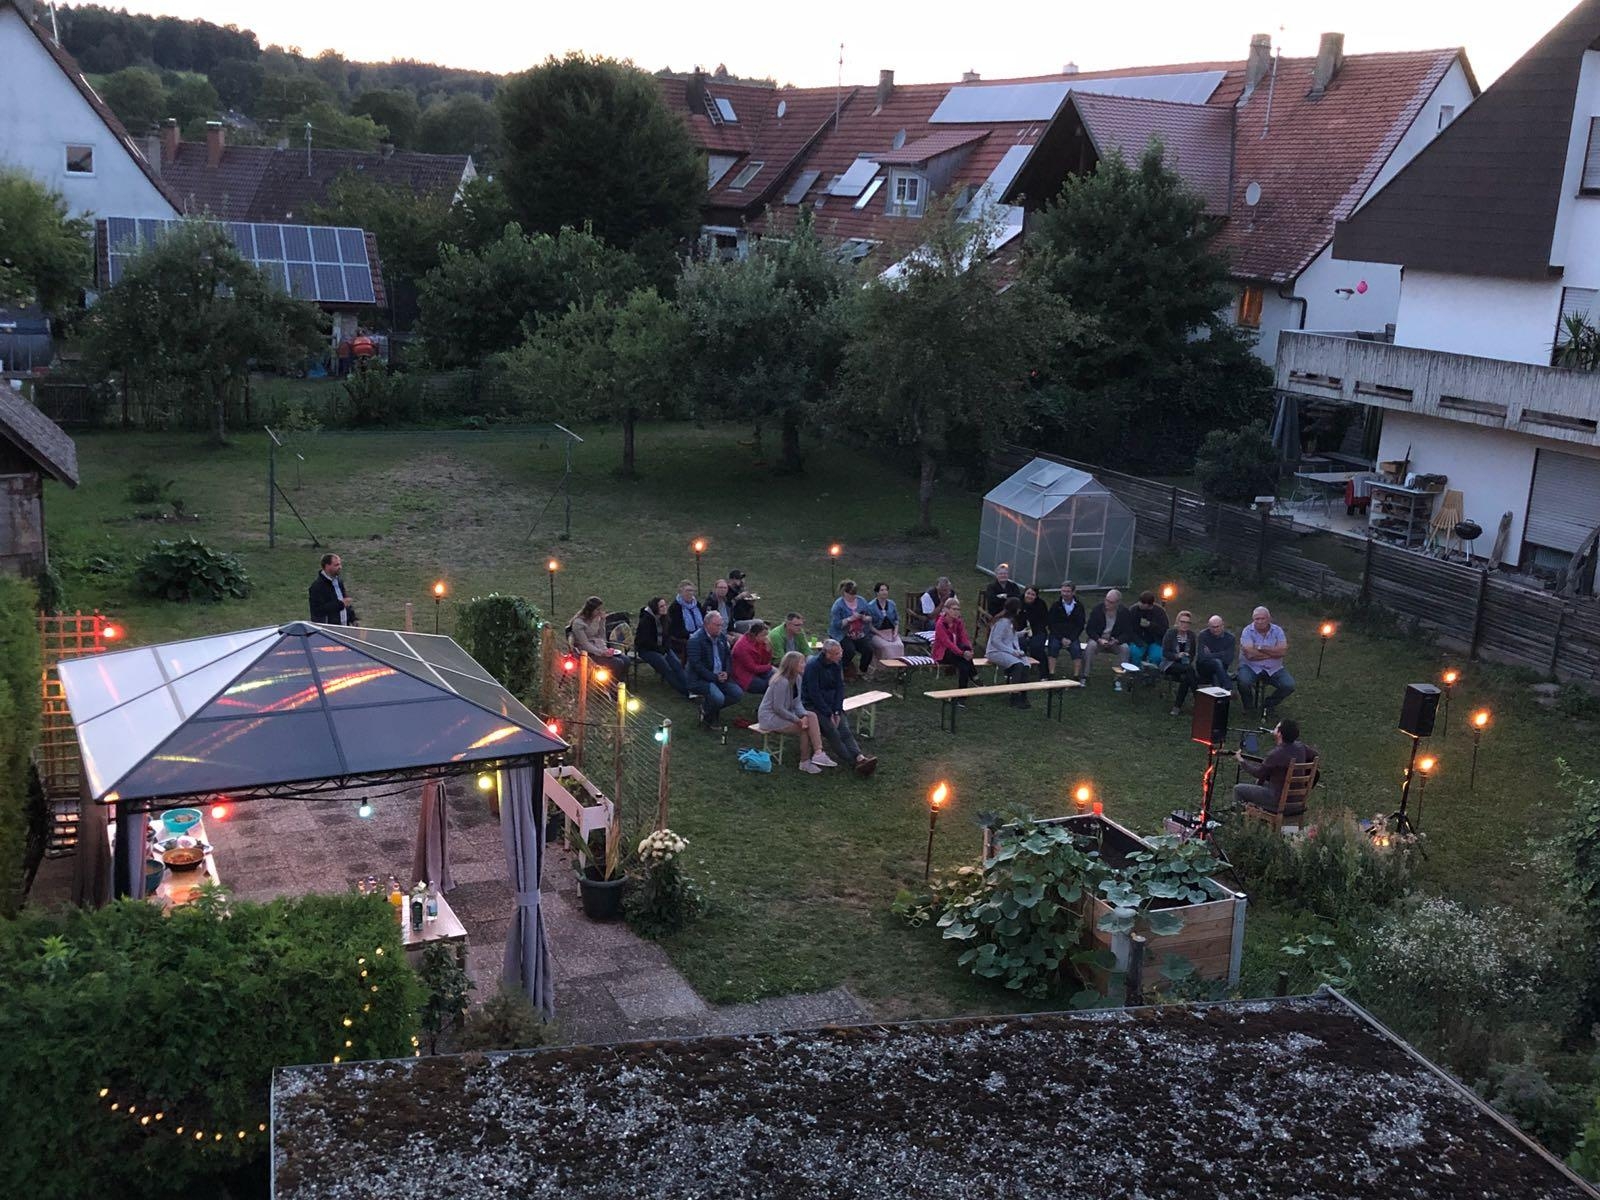 „Michaela‘s Soundgarden Vol.1“ kleines Akustikkonzert Livekonzert in meinem Garten
#garten #lifestyle #leben